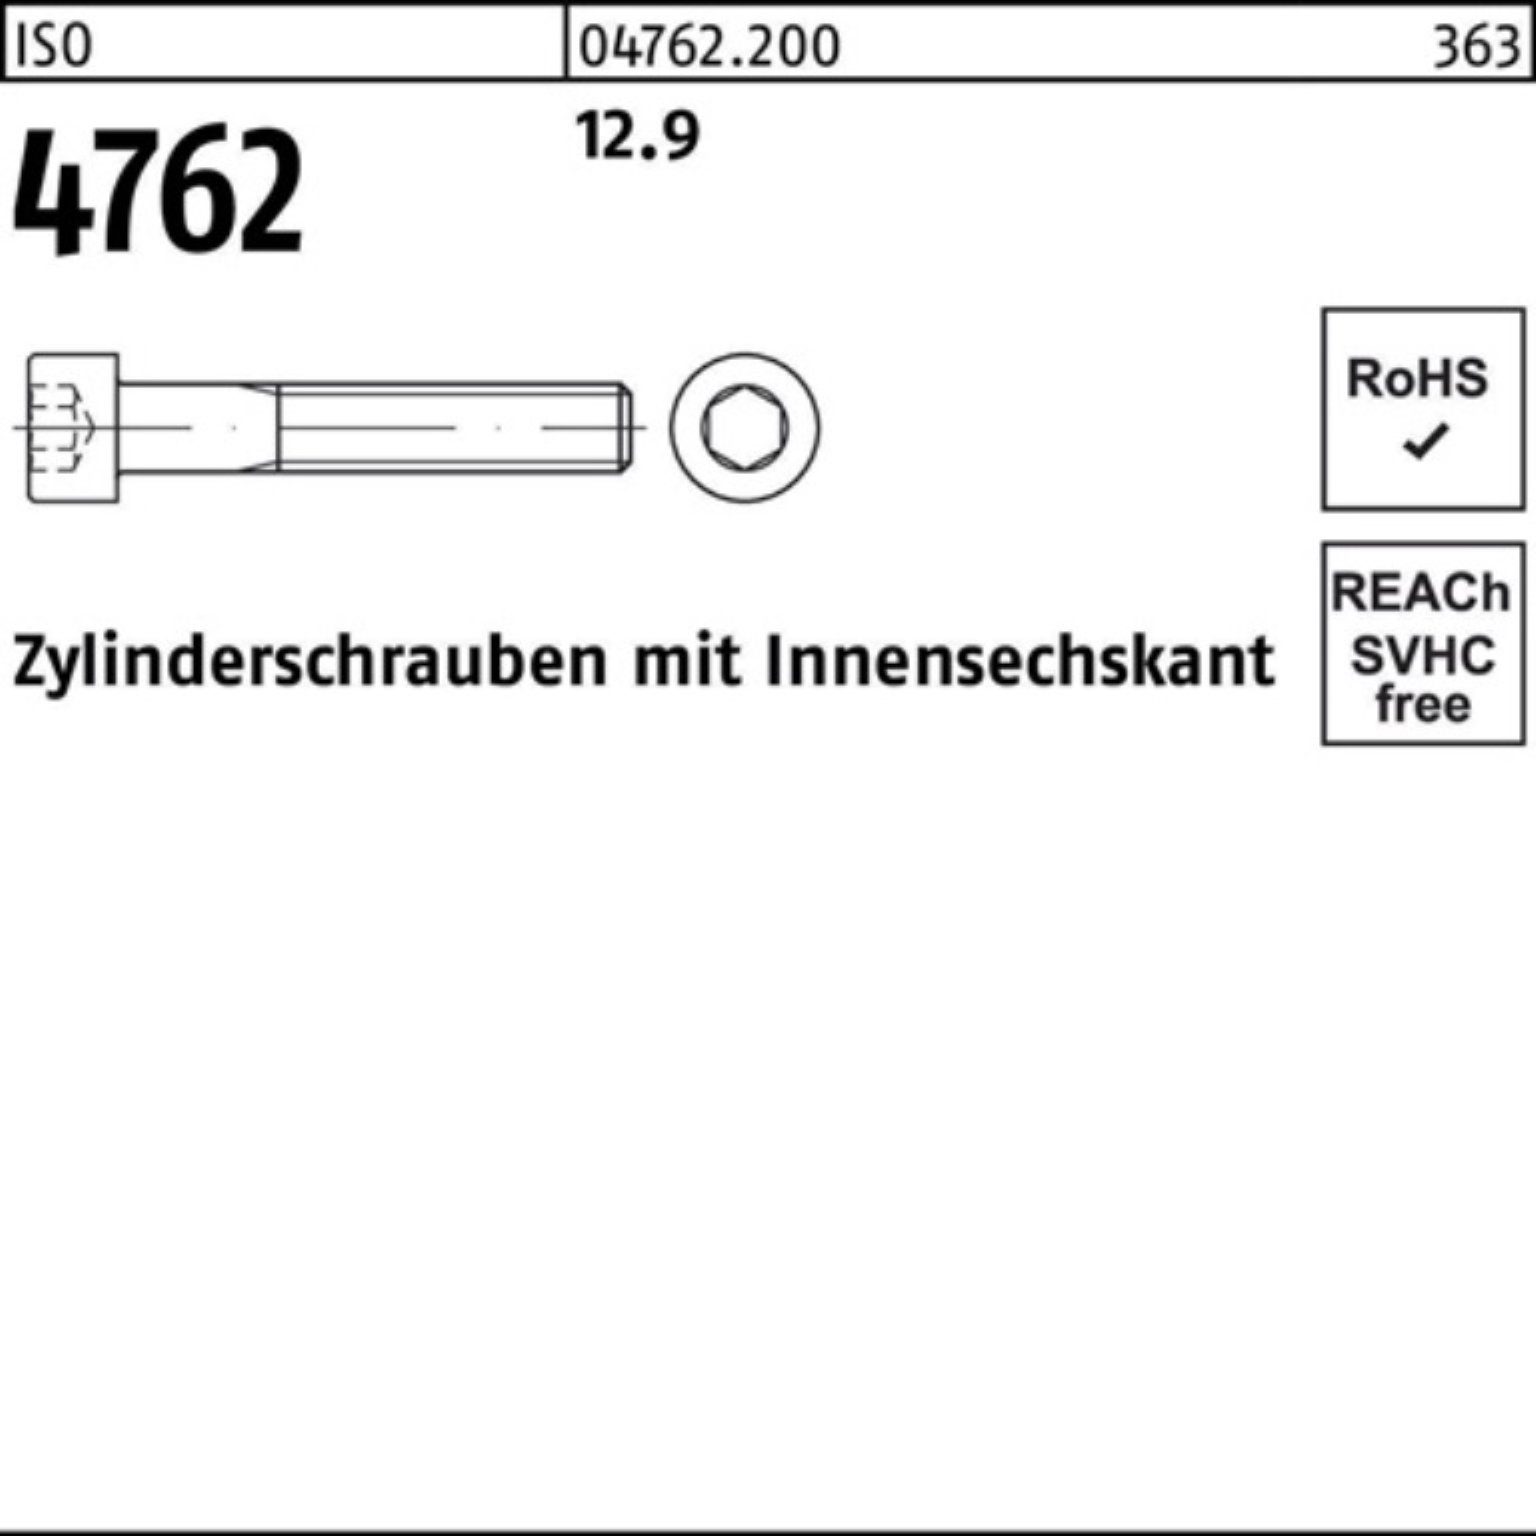 Stück 25 100er Innen-6kt 12.9 Zylinderschraube 4762 Reyher Zylinderschraube ISO Pack M18x 60